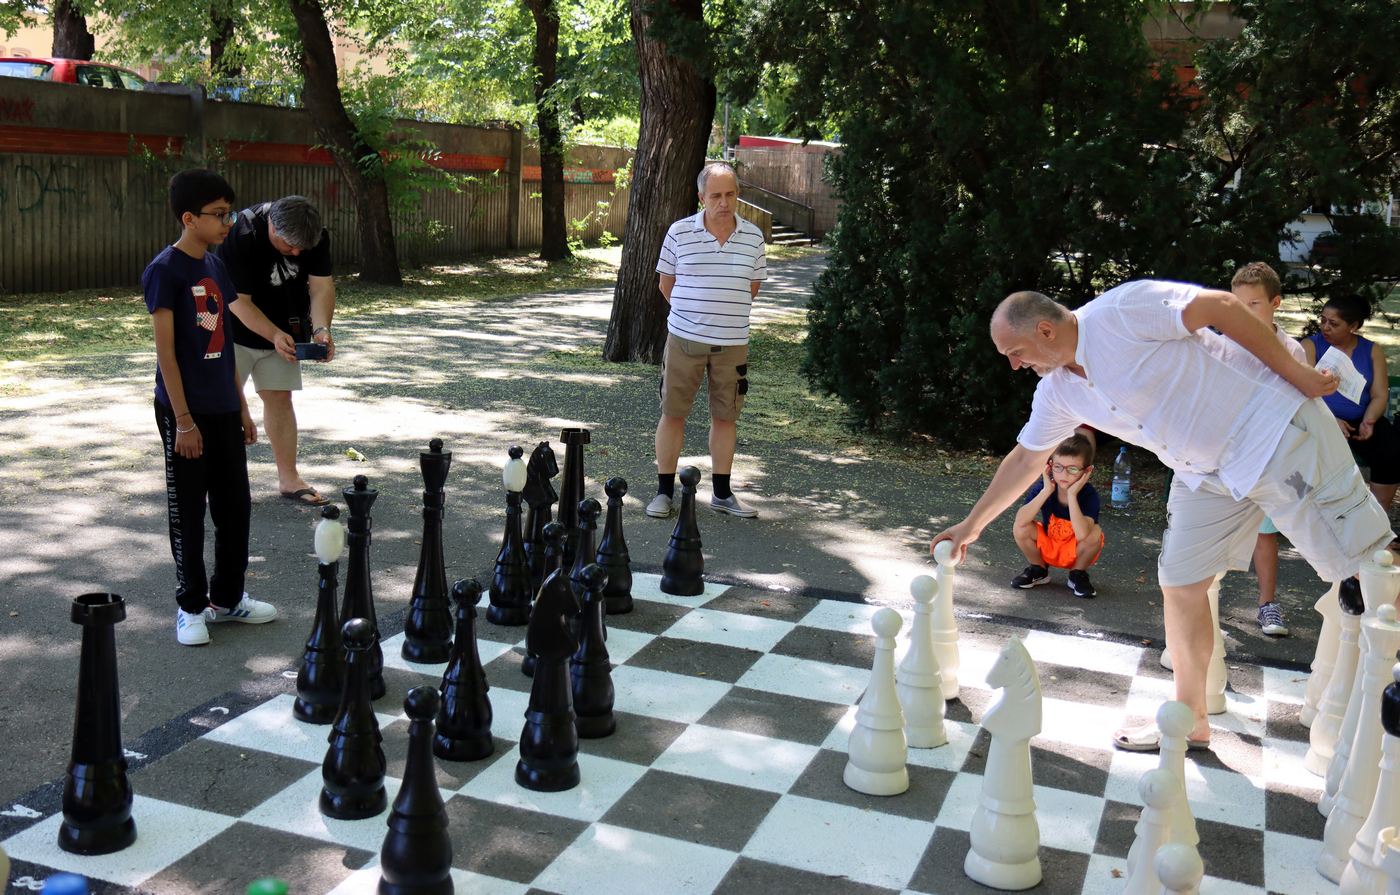 šahovsko igralište - subotica